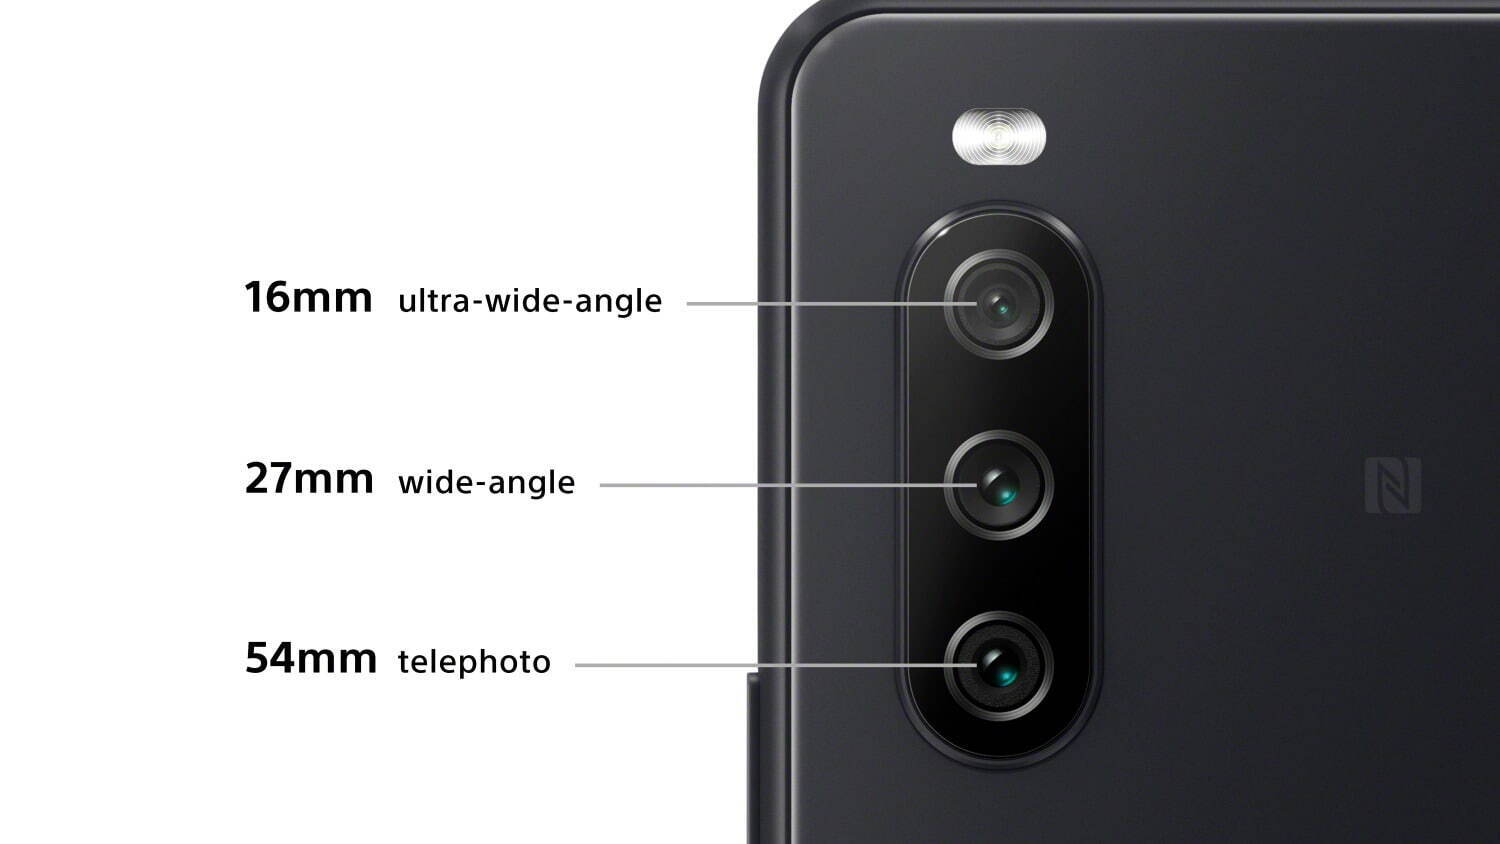 ソニー Xperia 1 Iii 世界初の可変式望遠レンズ搭載 5g対応 Xperia 10 Iii も ファッションプレス